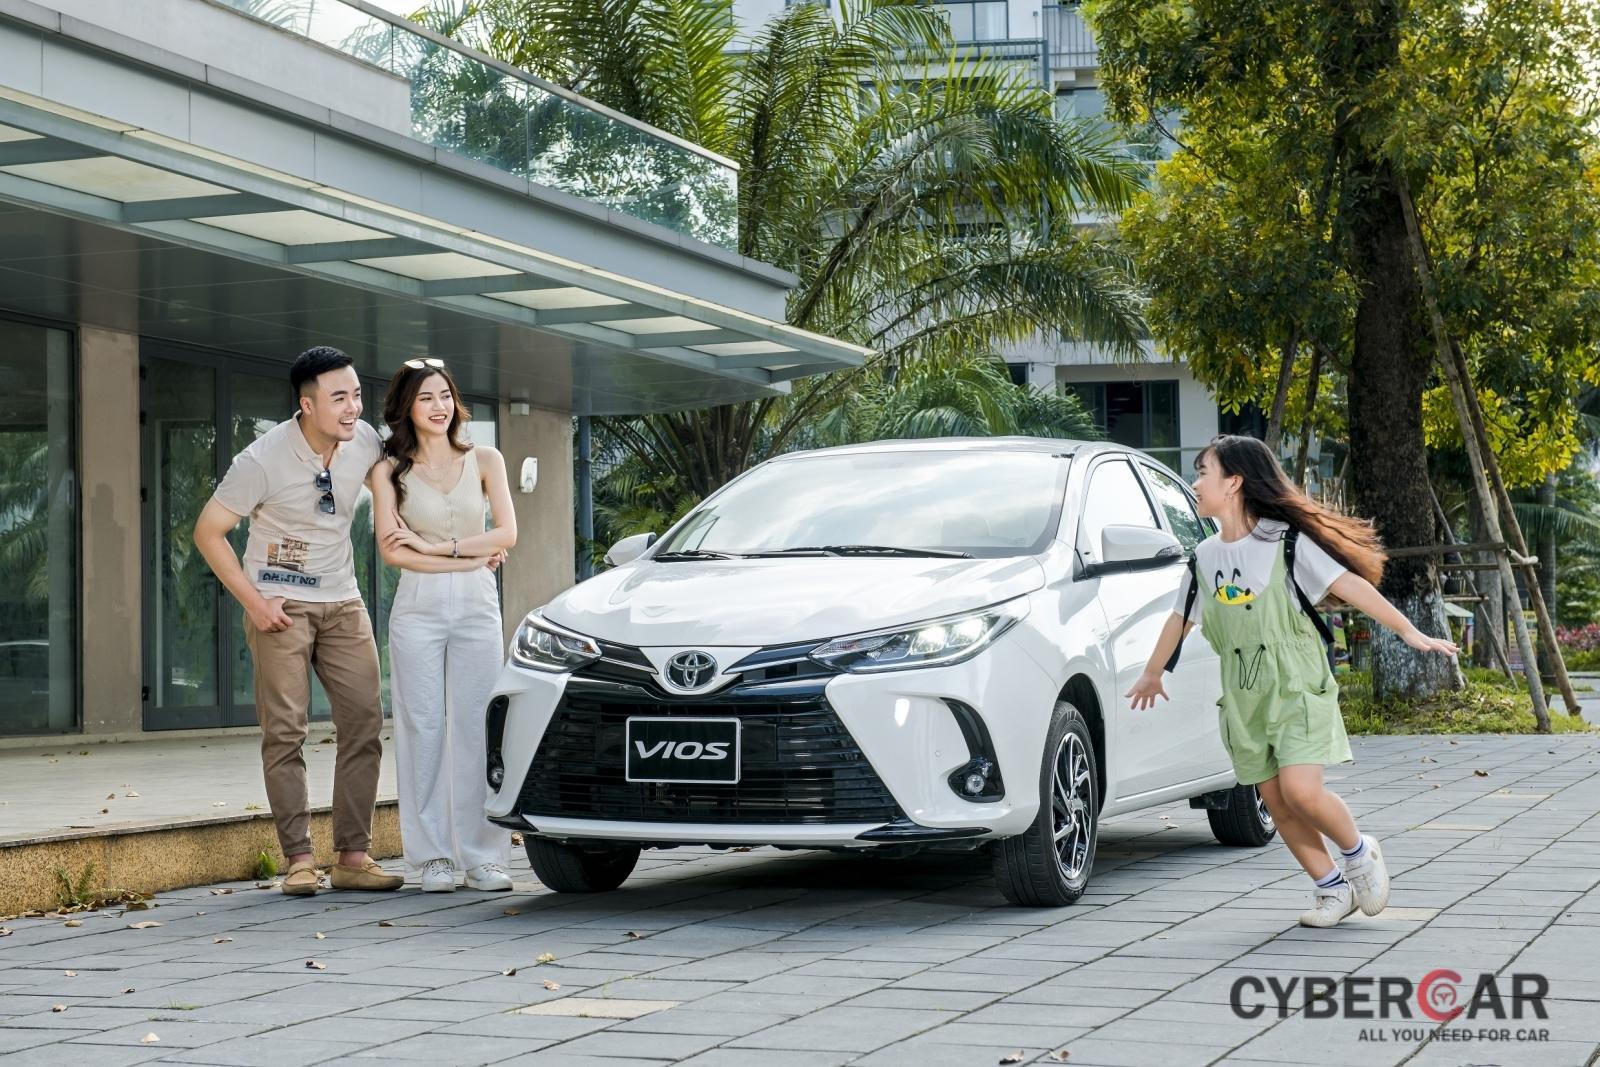 Toyota Vios ưu đãi lên đến 26,5 triệu đồng với chương trình “An tâm ở nhà, nhận quà ưu đãi” 1